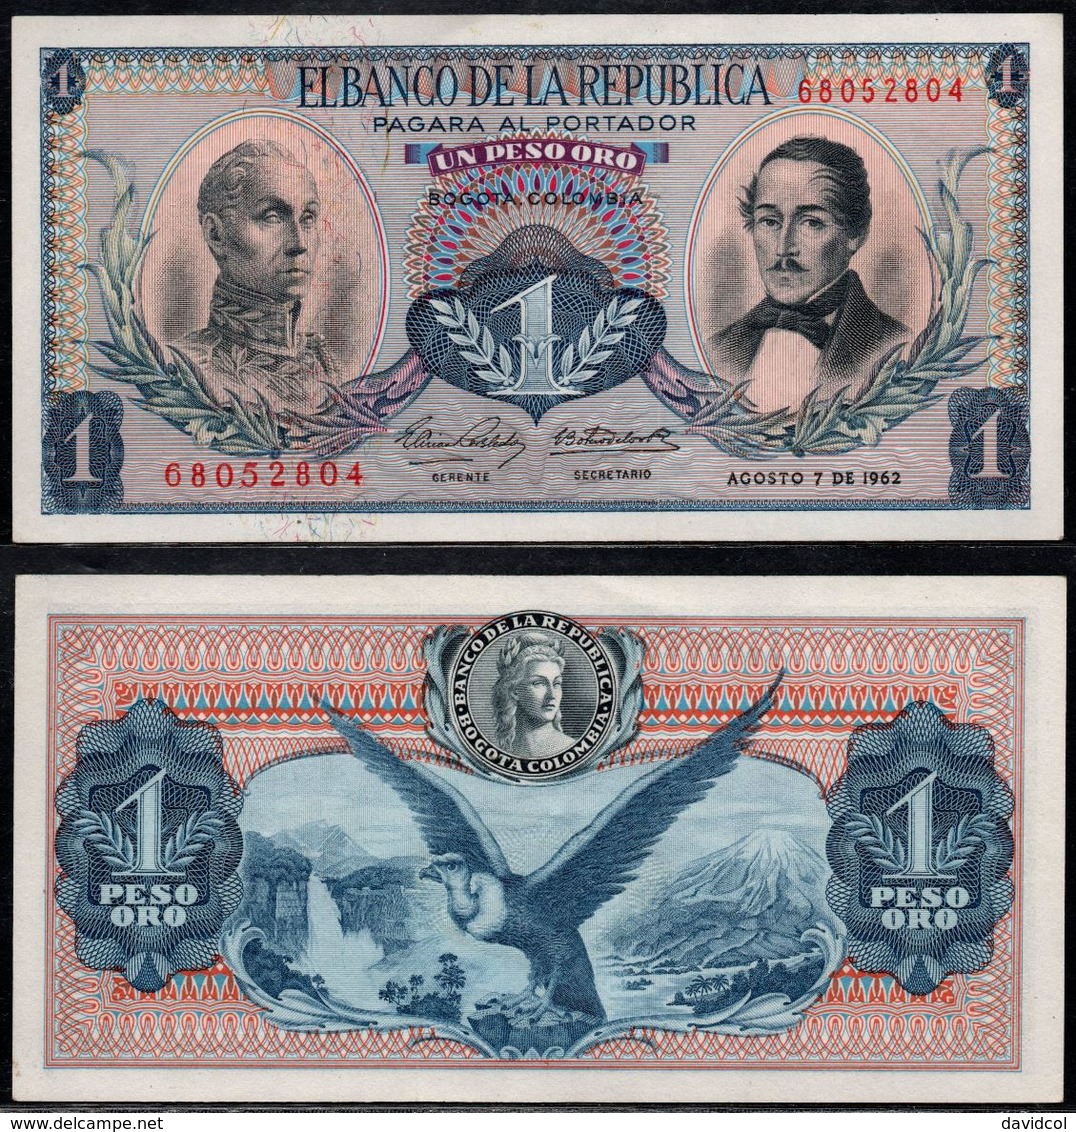 COLOMBIA - 1962 - UN PESO ORO ( $ 1 ) - UNCIRCULATED. CONDITION 9/10 - Kolumbien